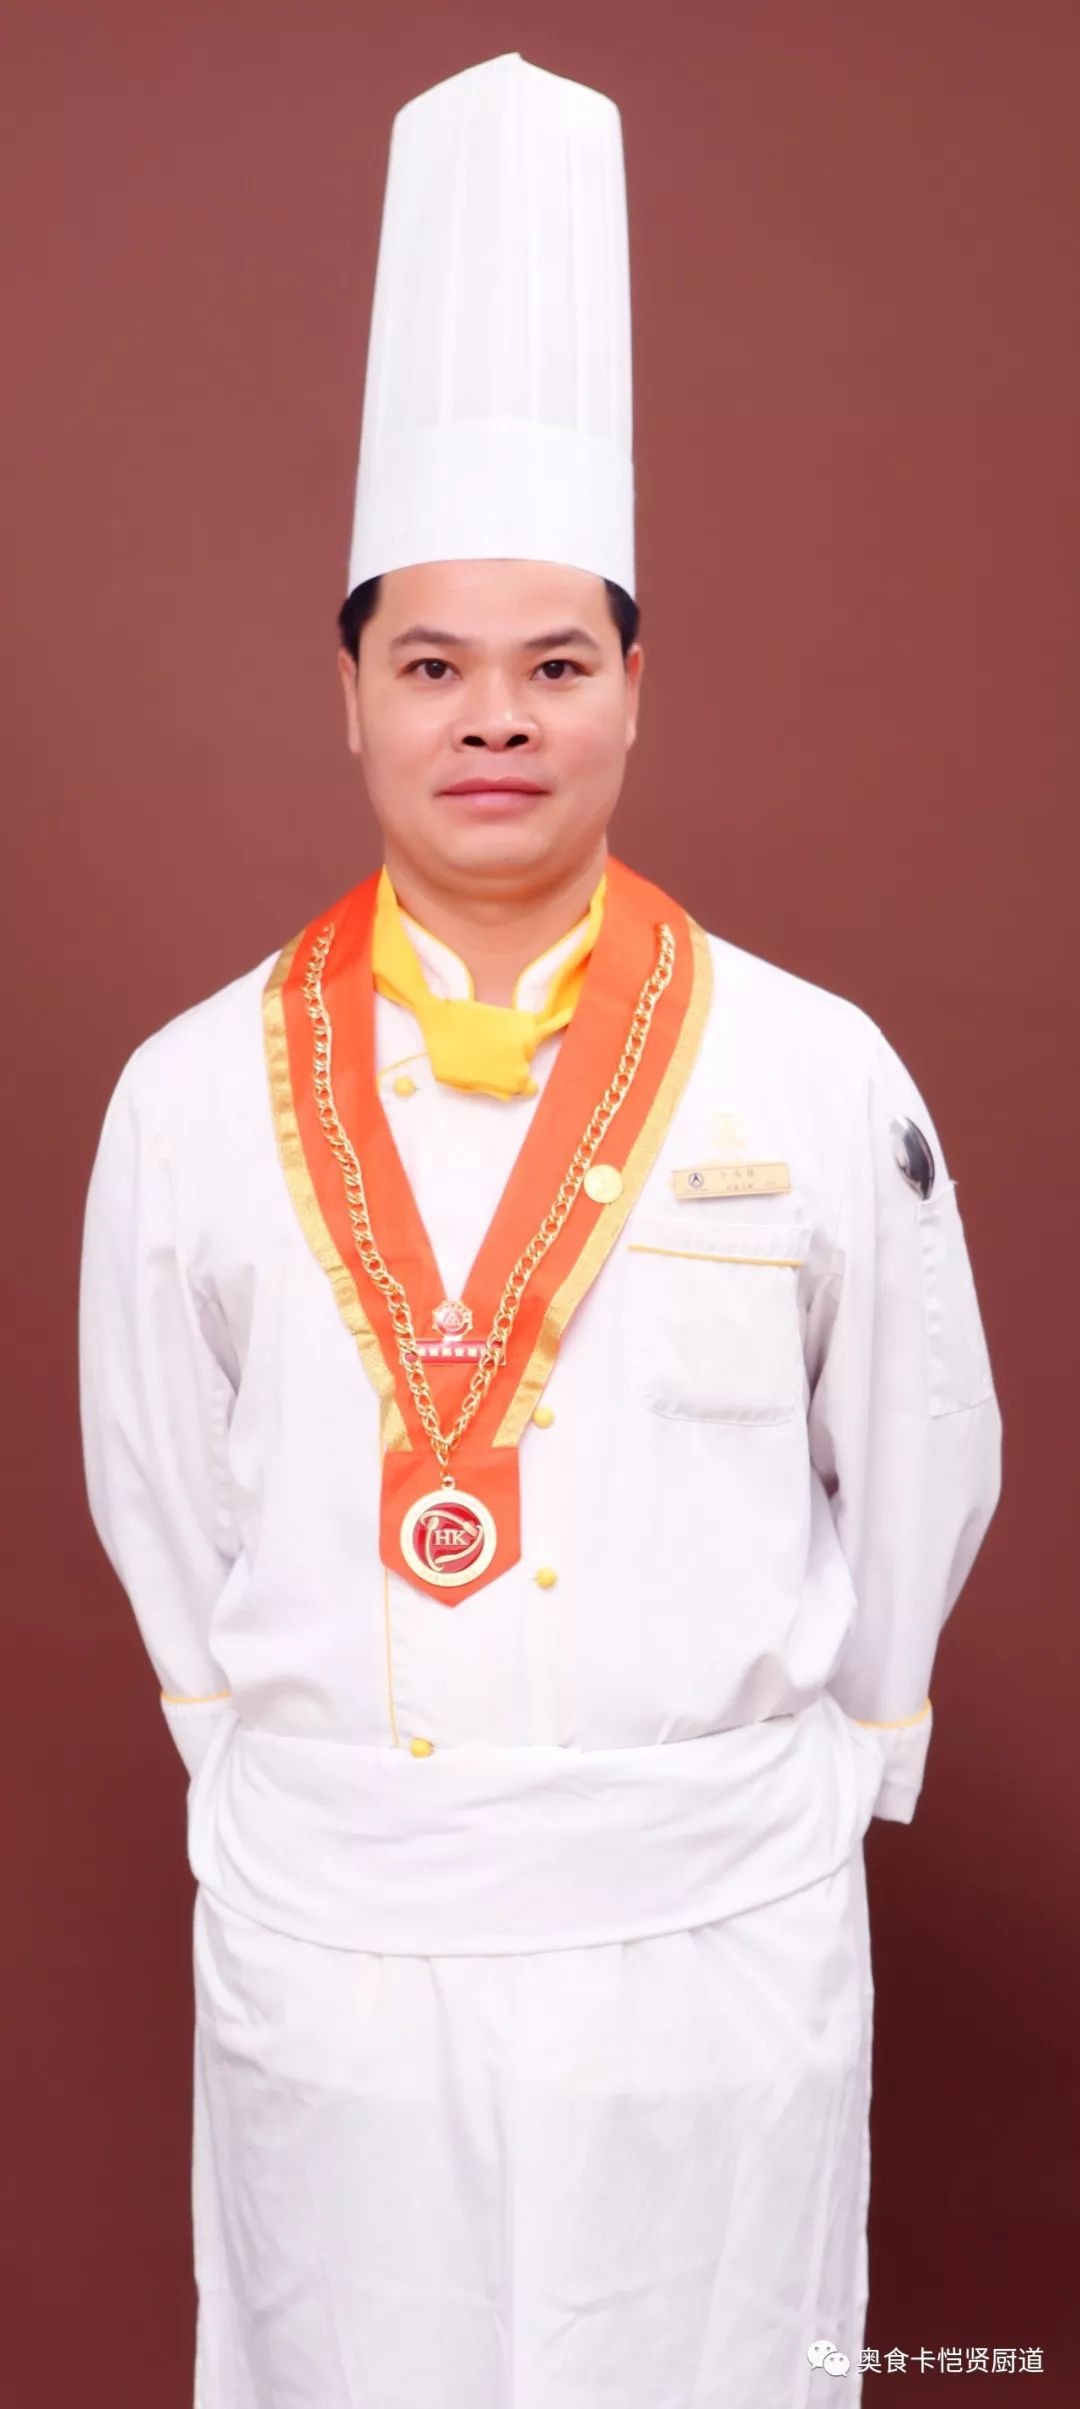 2009年至2011年 北京市阿森鲍鱼食府任厨师长